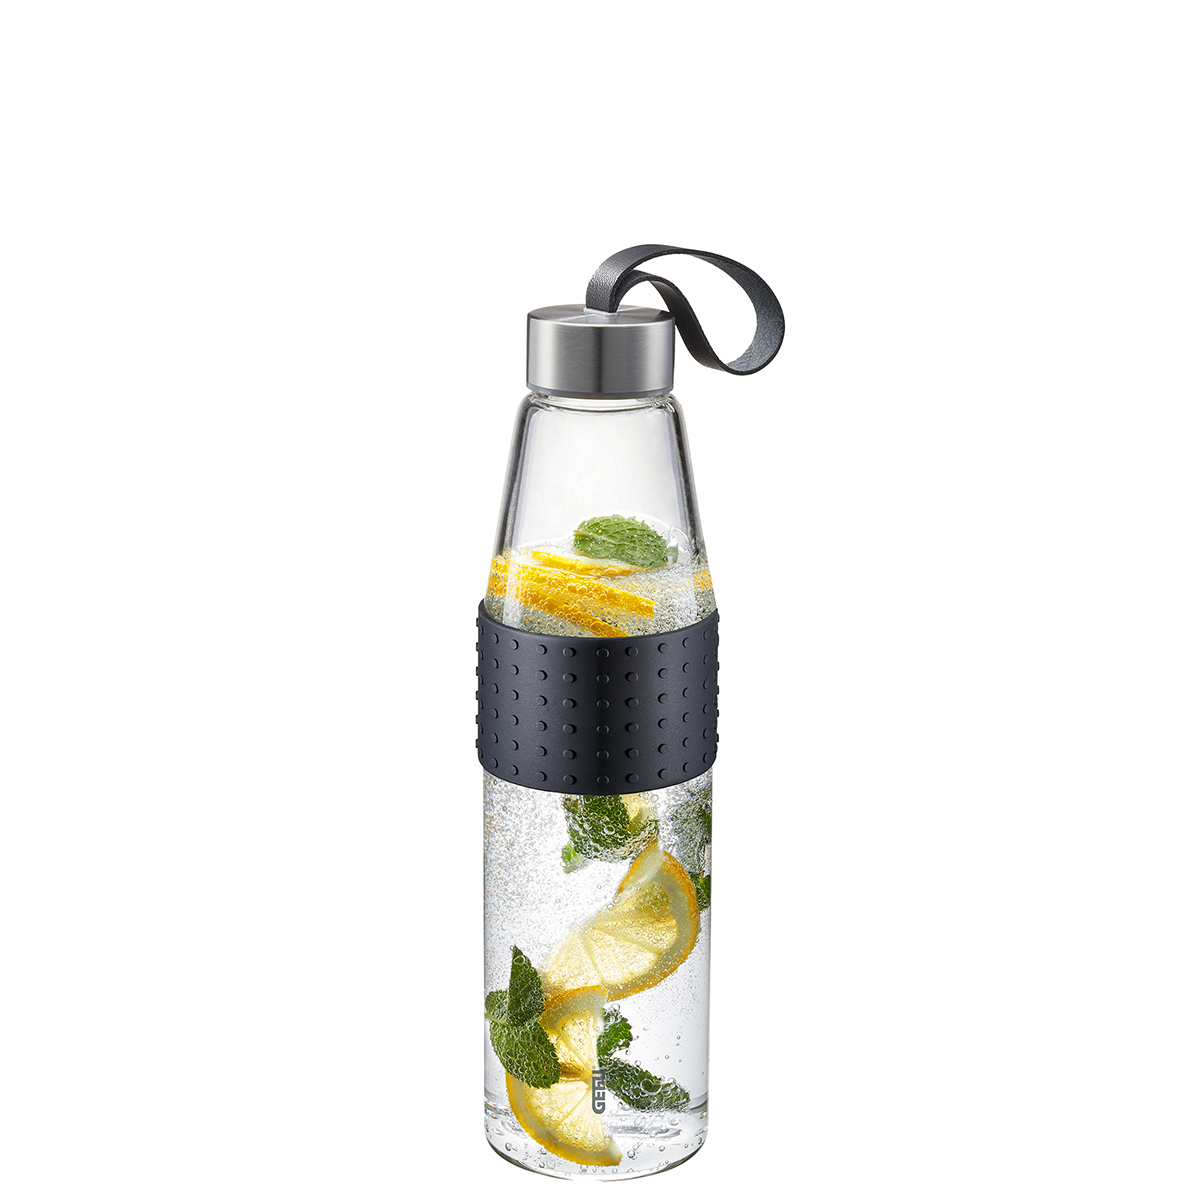 GEFU Edelstahl OLIMPIO Glastrinkflasche Flasche Trinkflasche Wasserflasche groß auslaufsicher